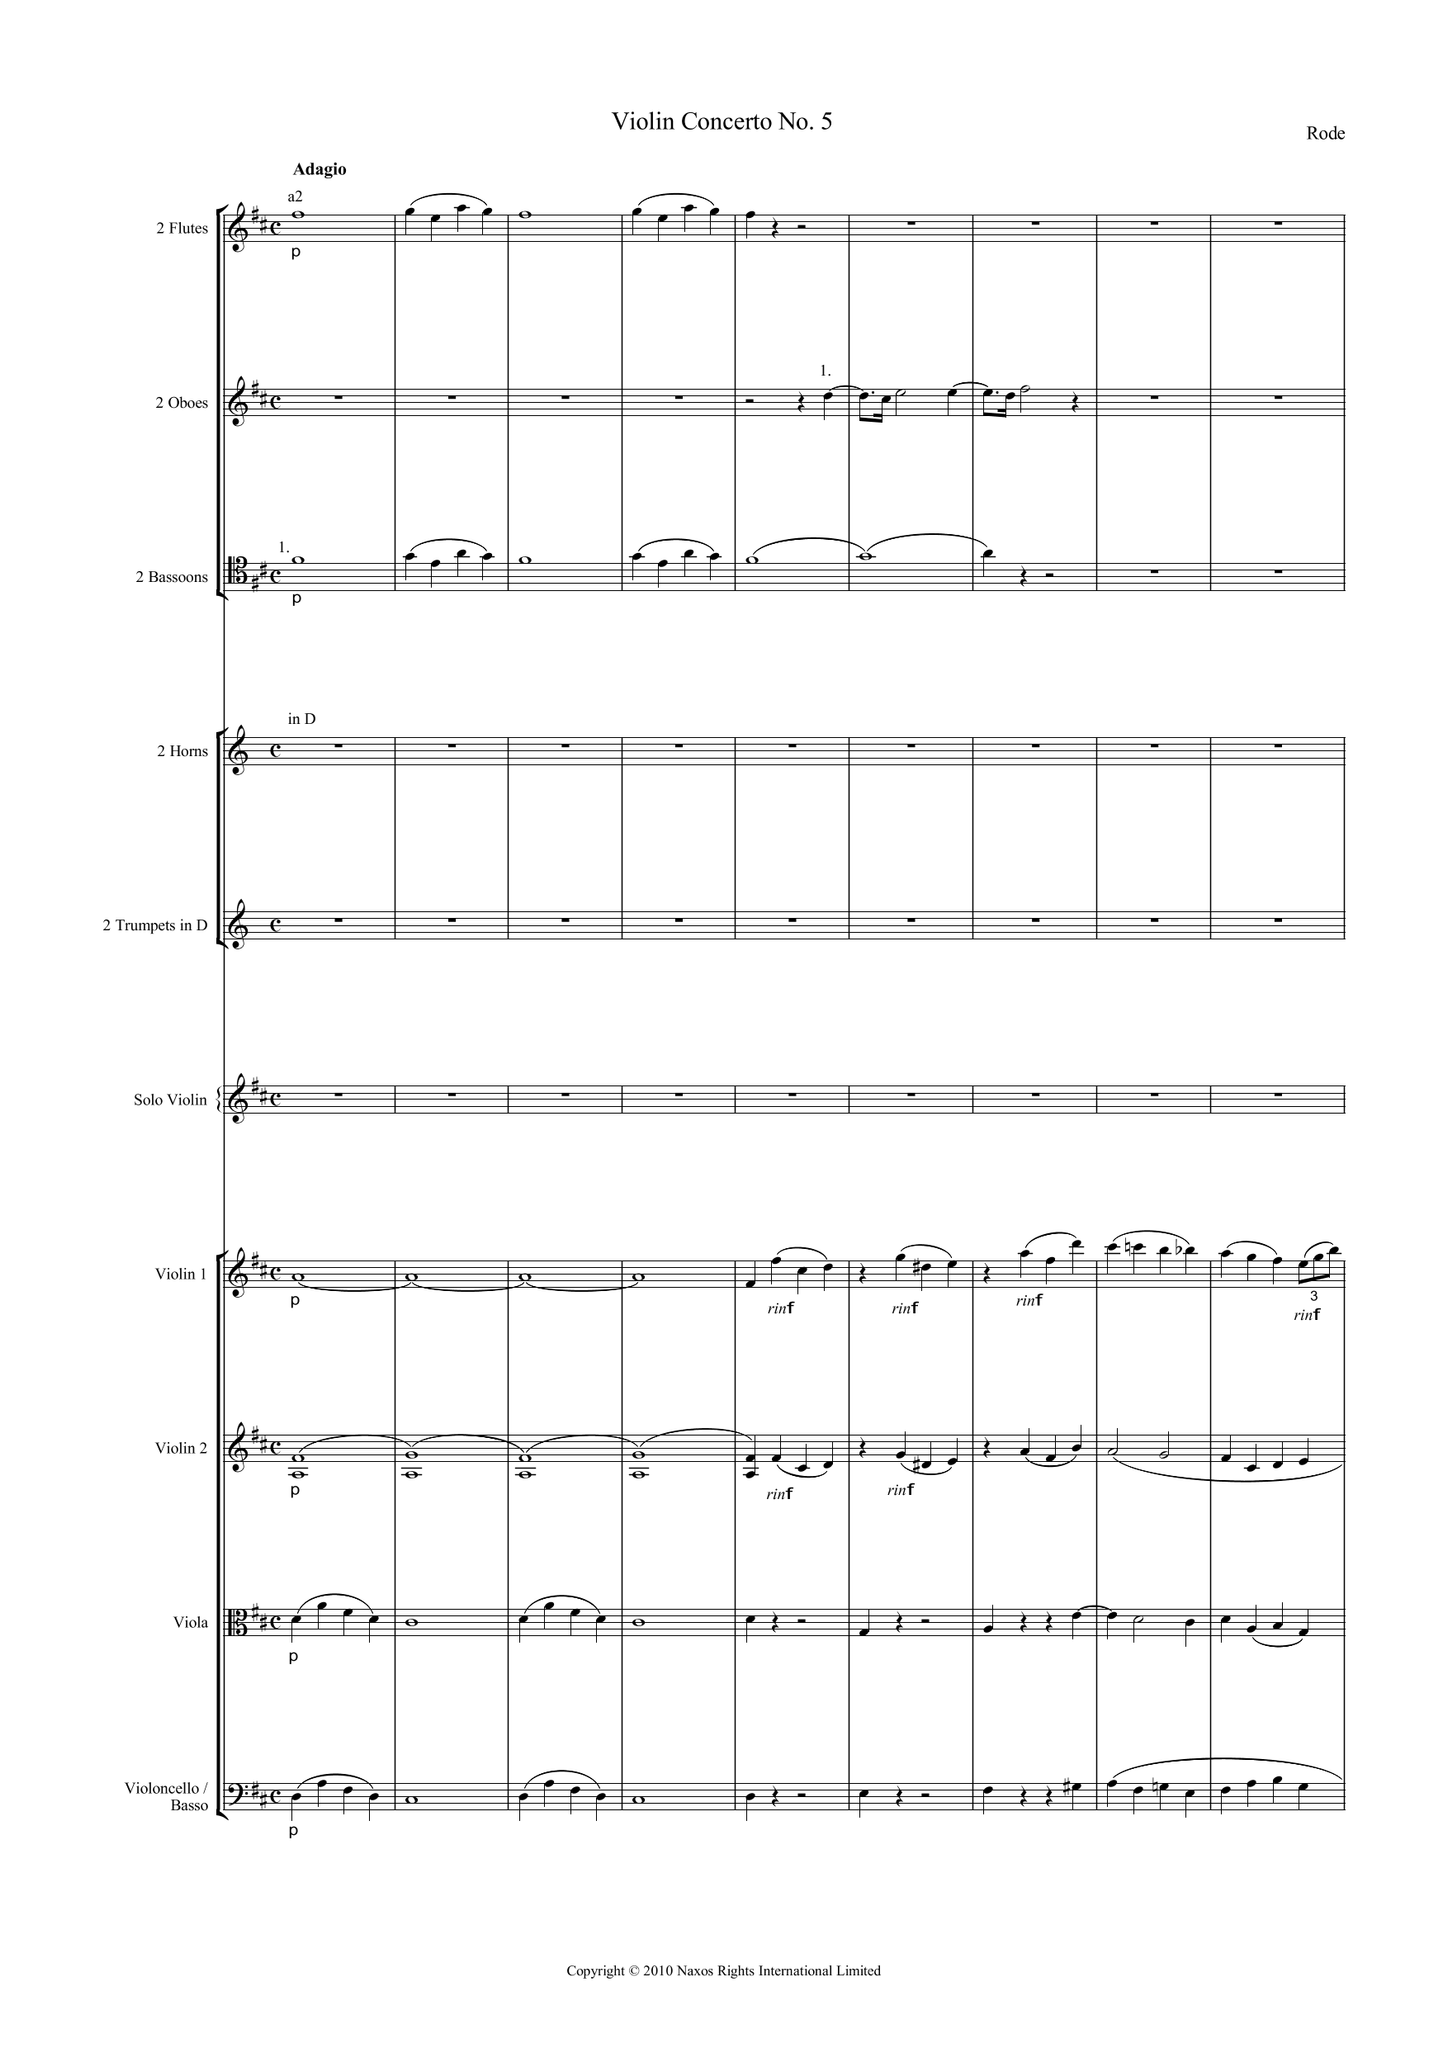 Pierre, Rode: Violin Concerto No.5 in D Major, Op.7 (Rode005)